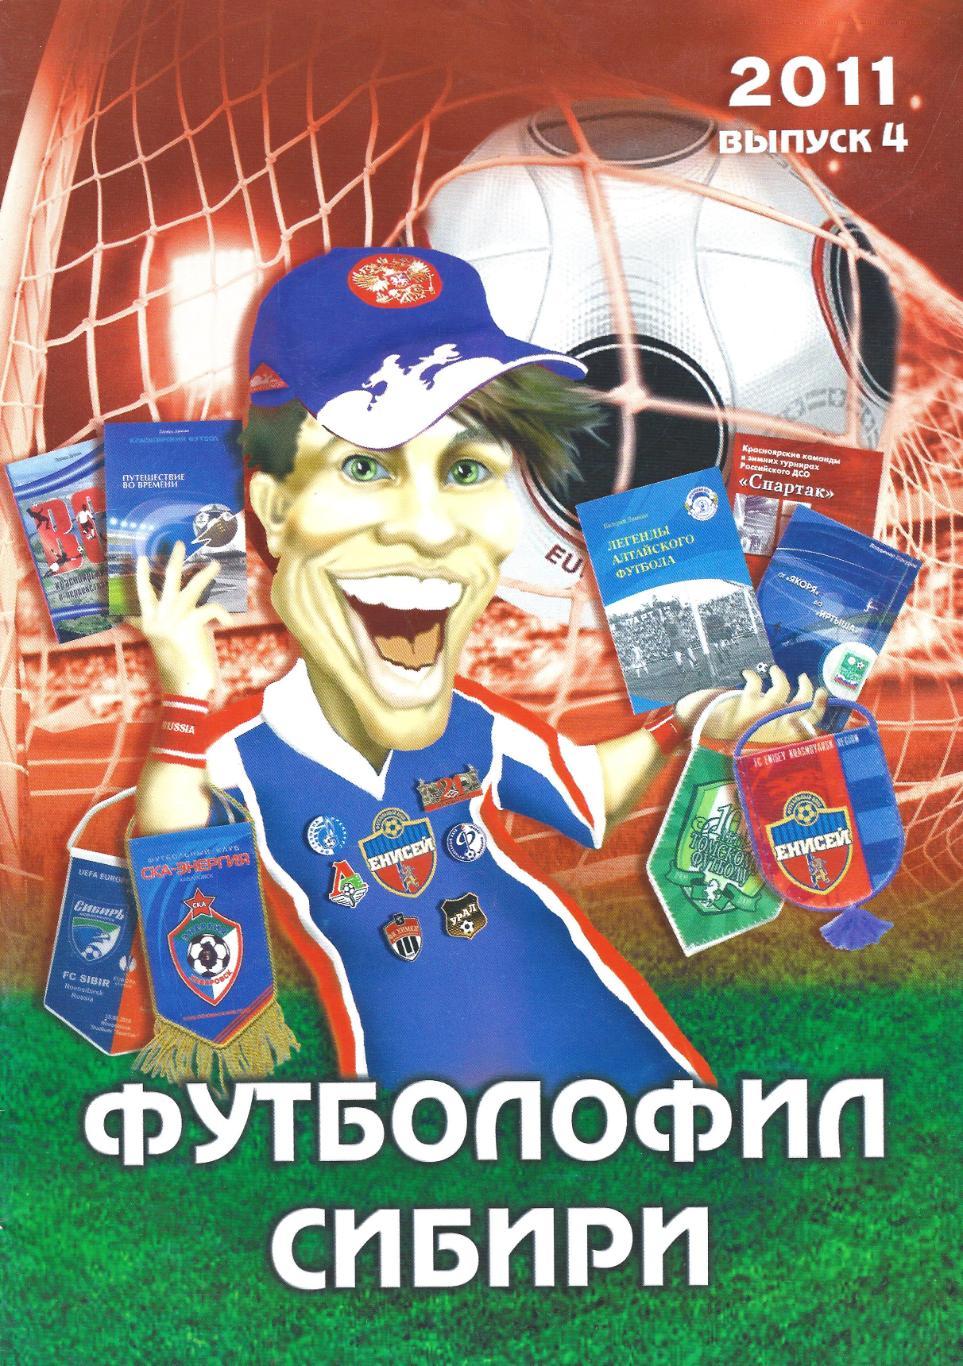 Футболофил Сибири (Красноярск) - выпуск 4